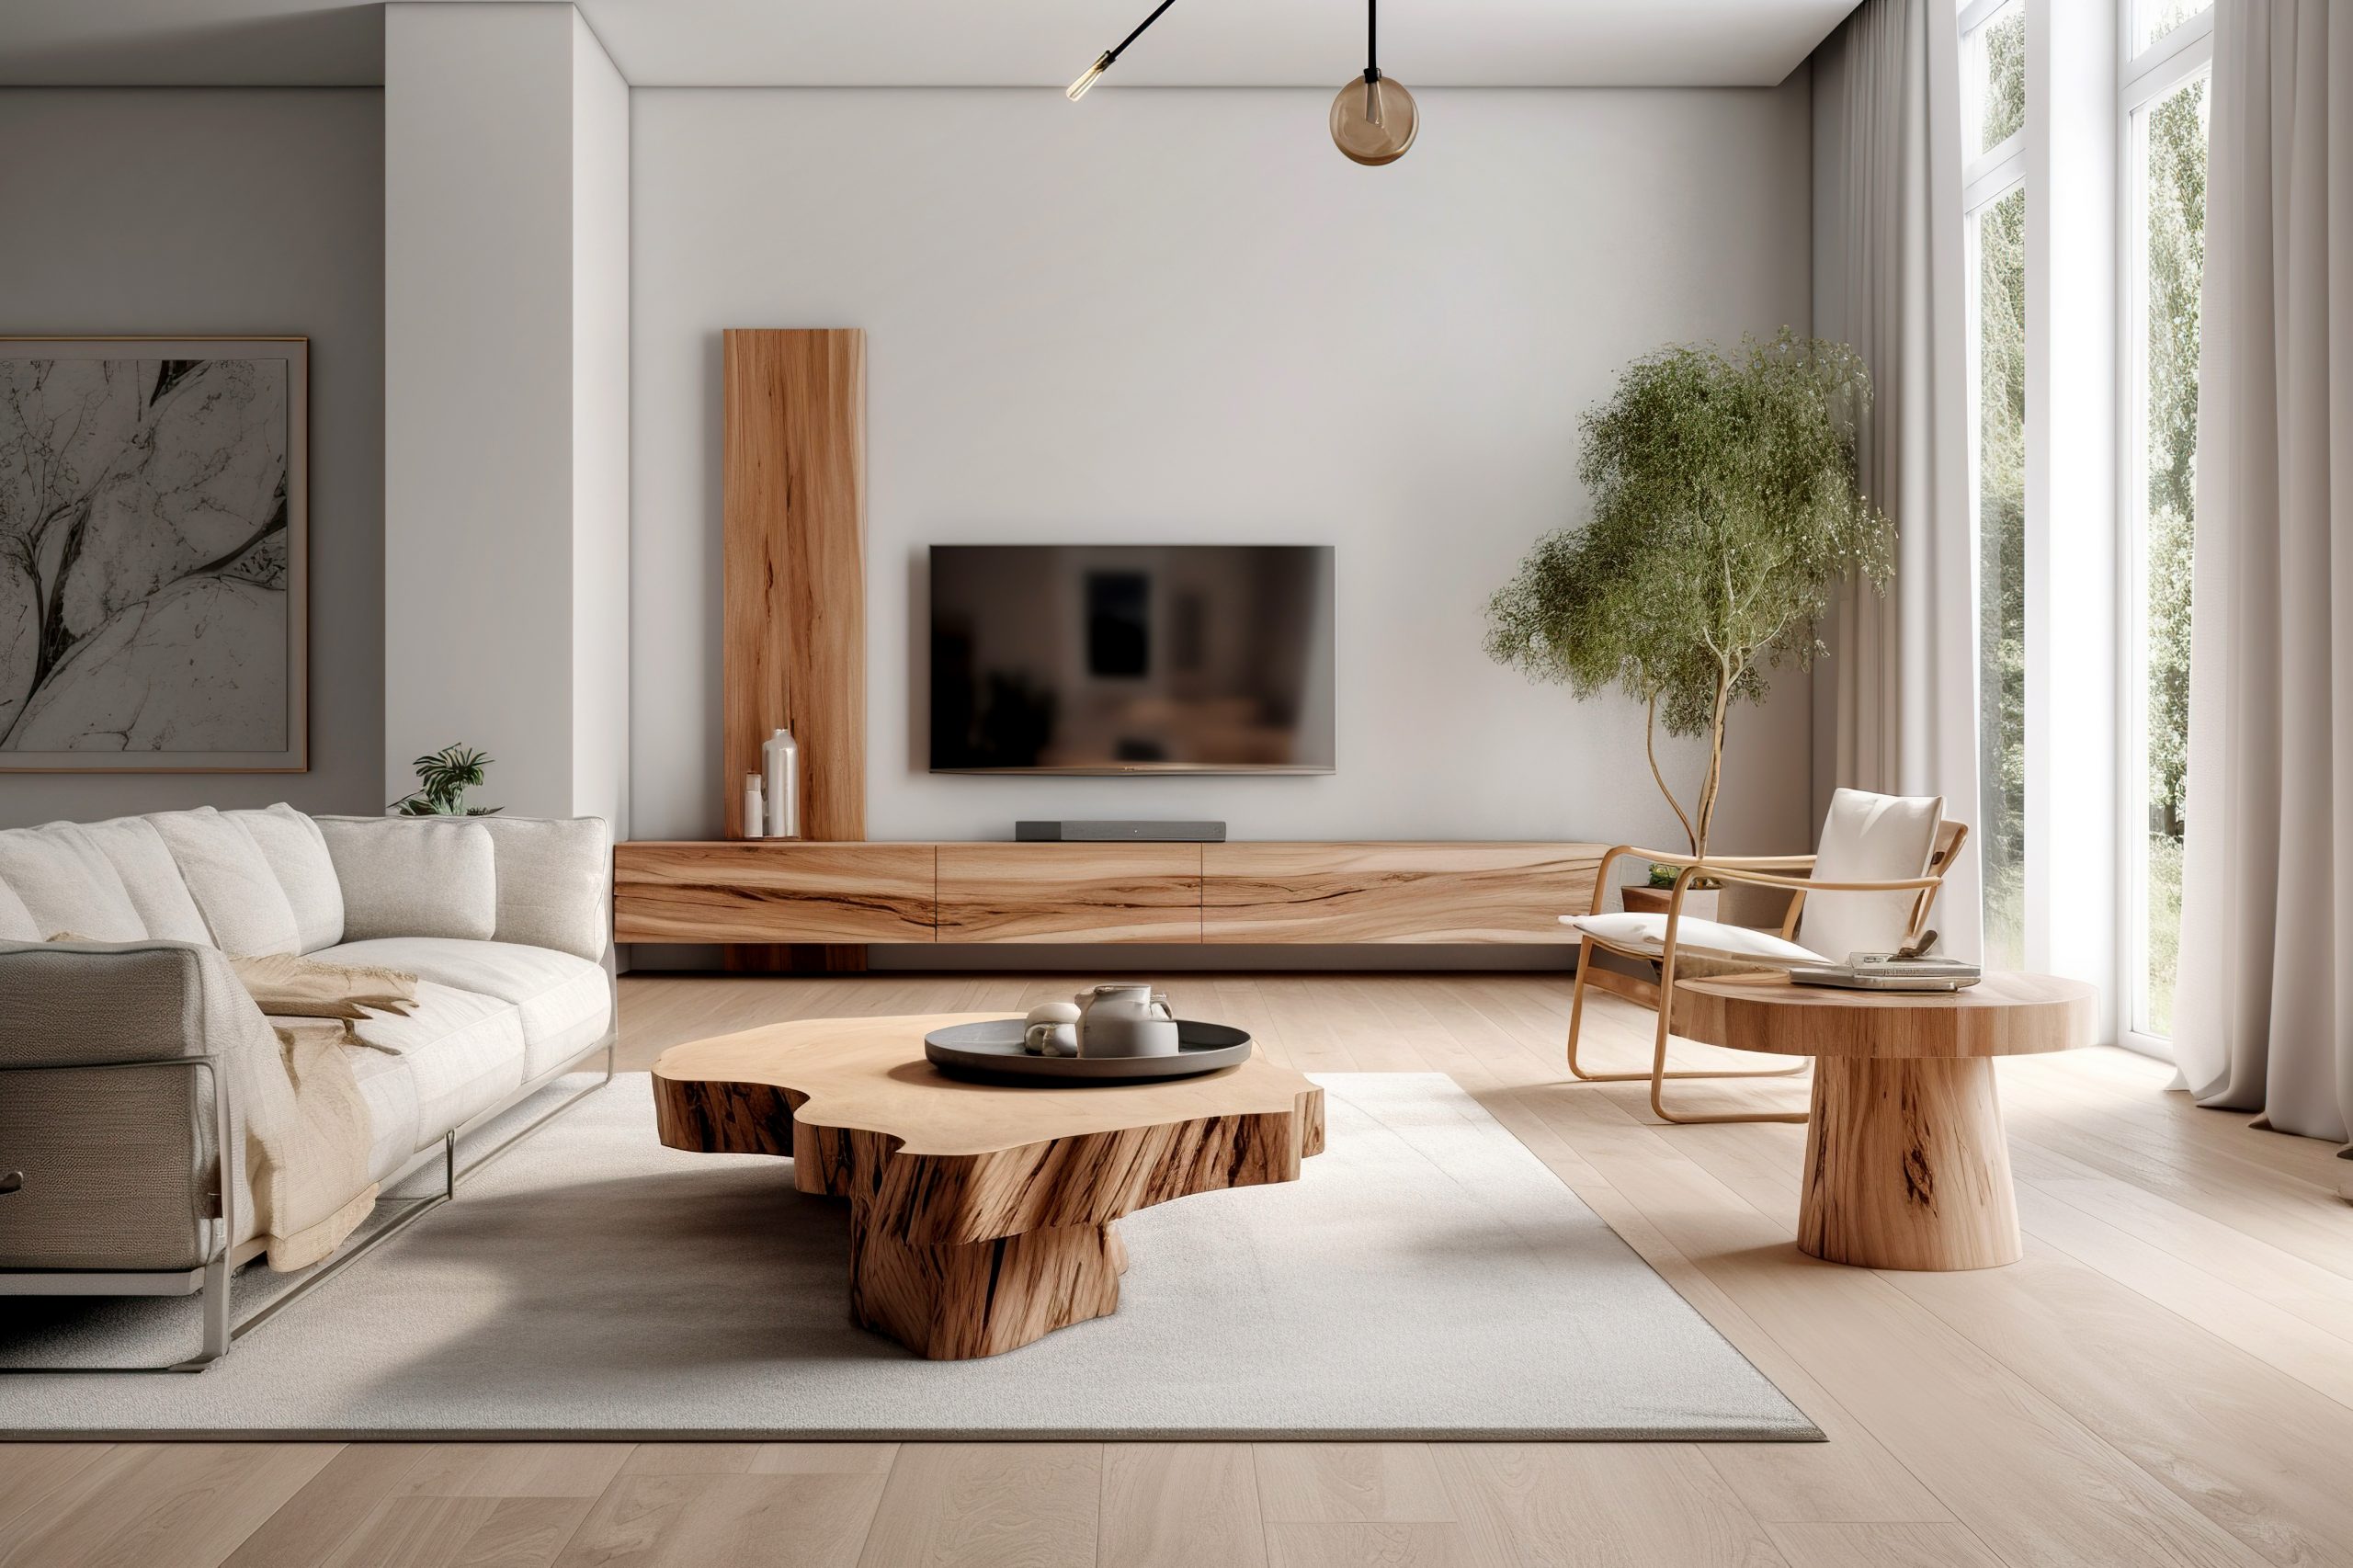 Möbel aus Holz gehören zu einer nachhaltigen Inneneinrichtung. Foto © Vadim Andrushchenko stock adobe